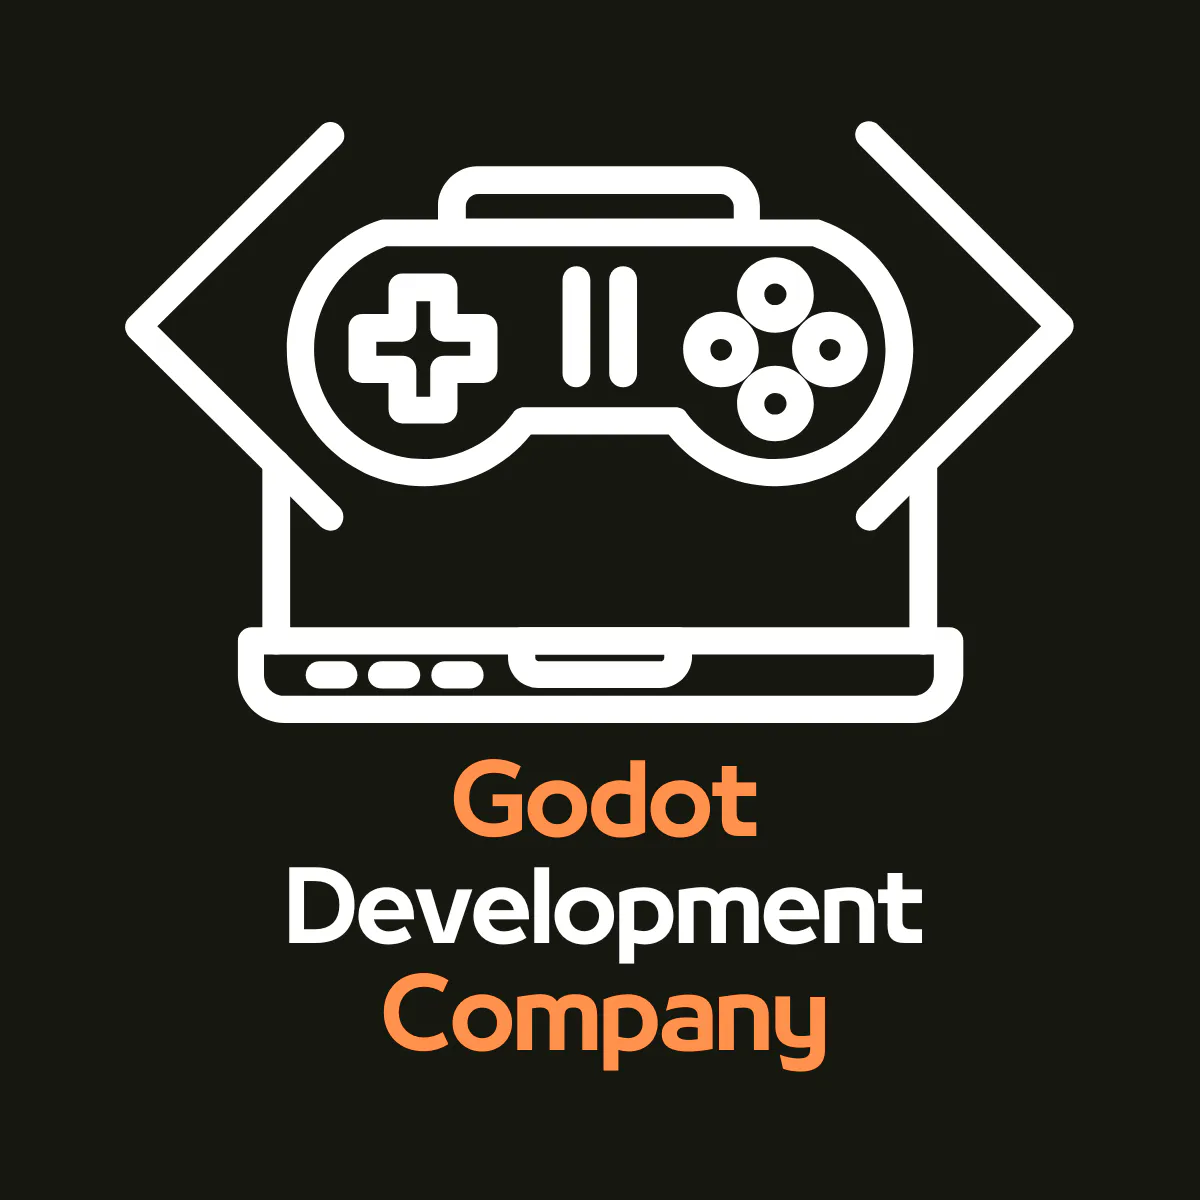 Godot Development